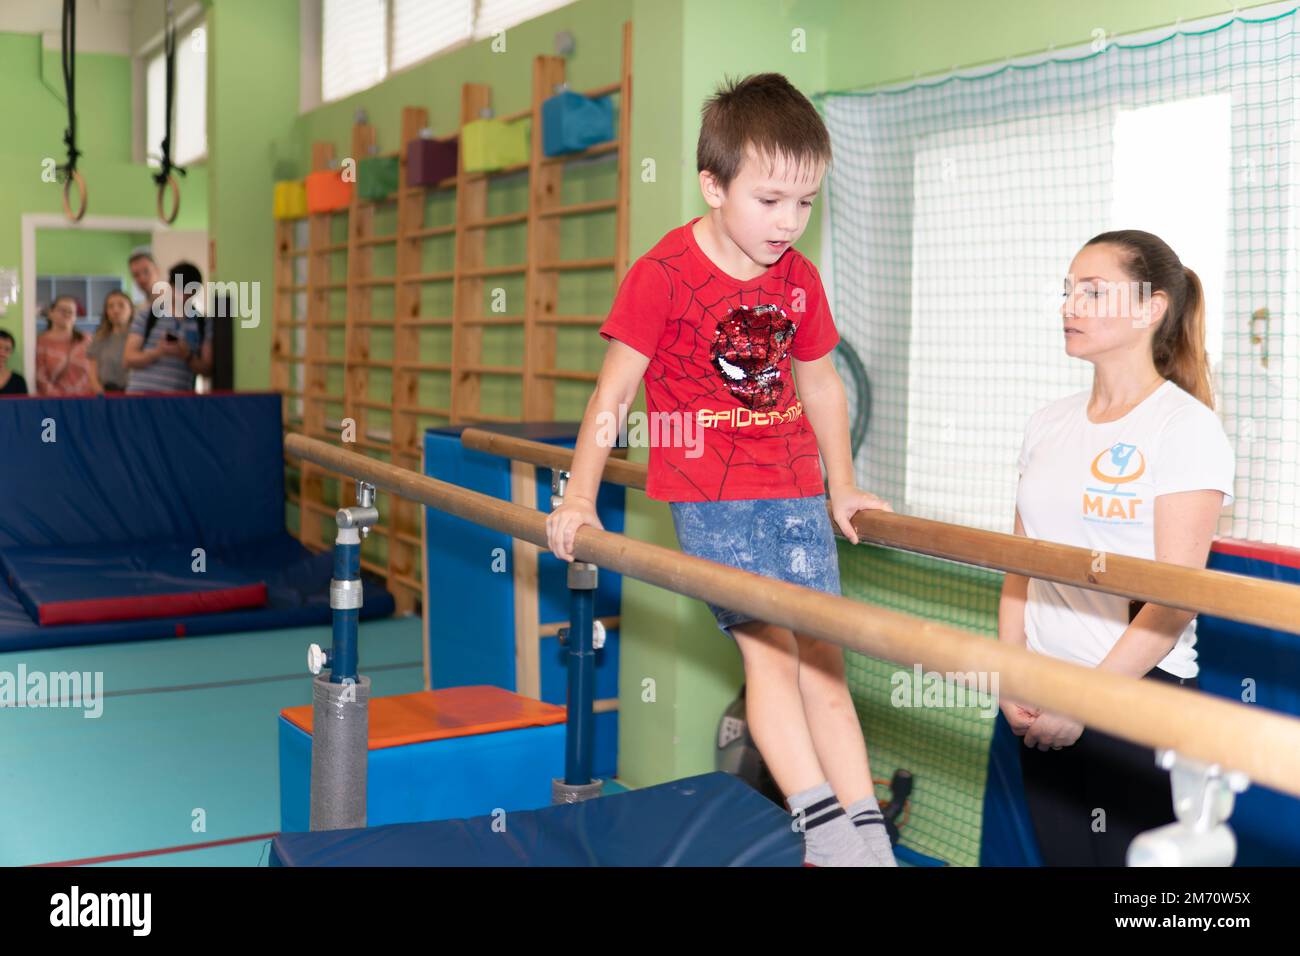 MOSCOU, RUSSIE-DEC 18, 2022: Corps actif Kid force fitness compétition enfant athlète gymnaste gymnastique garçon exercice Banque D'Images